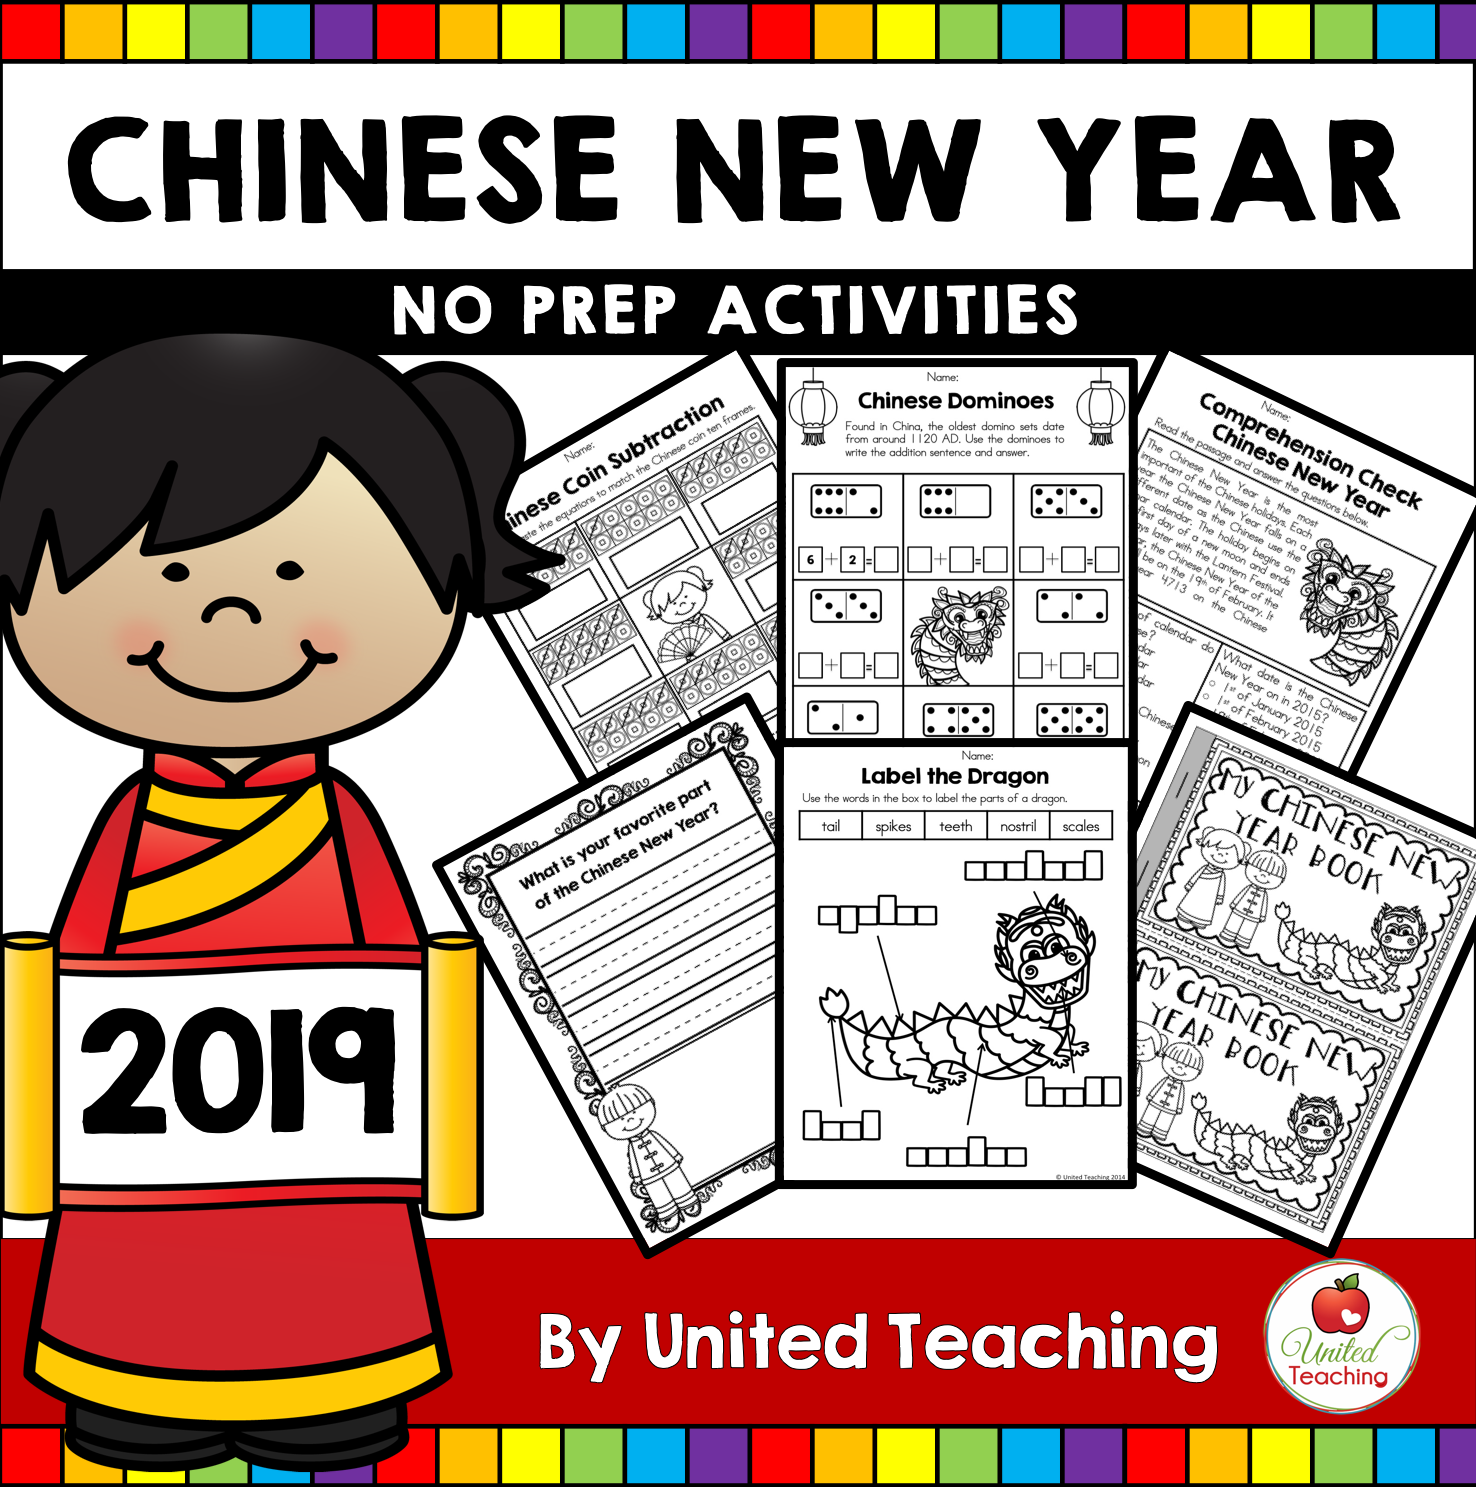 Chinese New Year No Prep Activities1476 x 1487